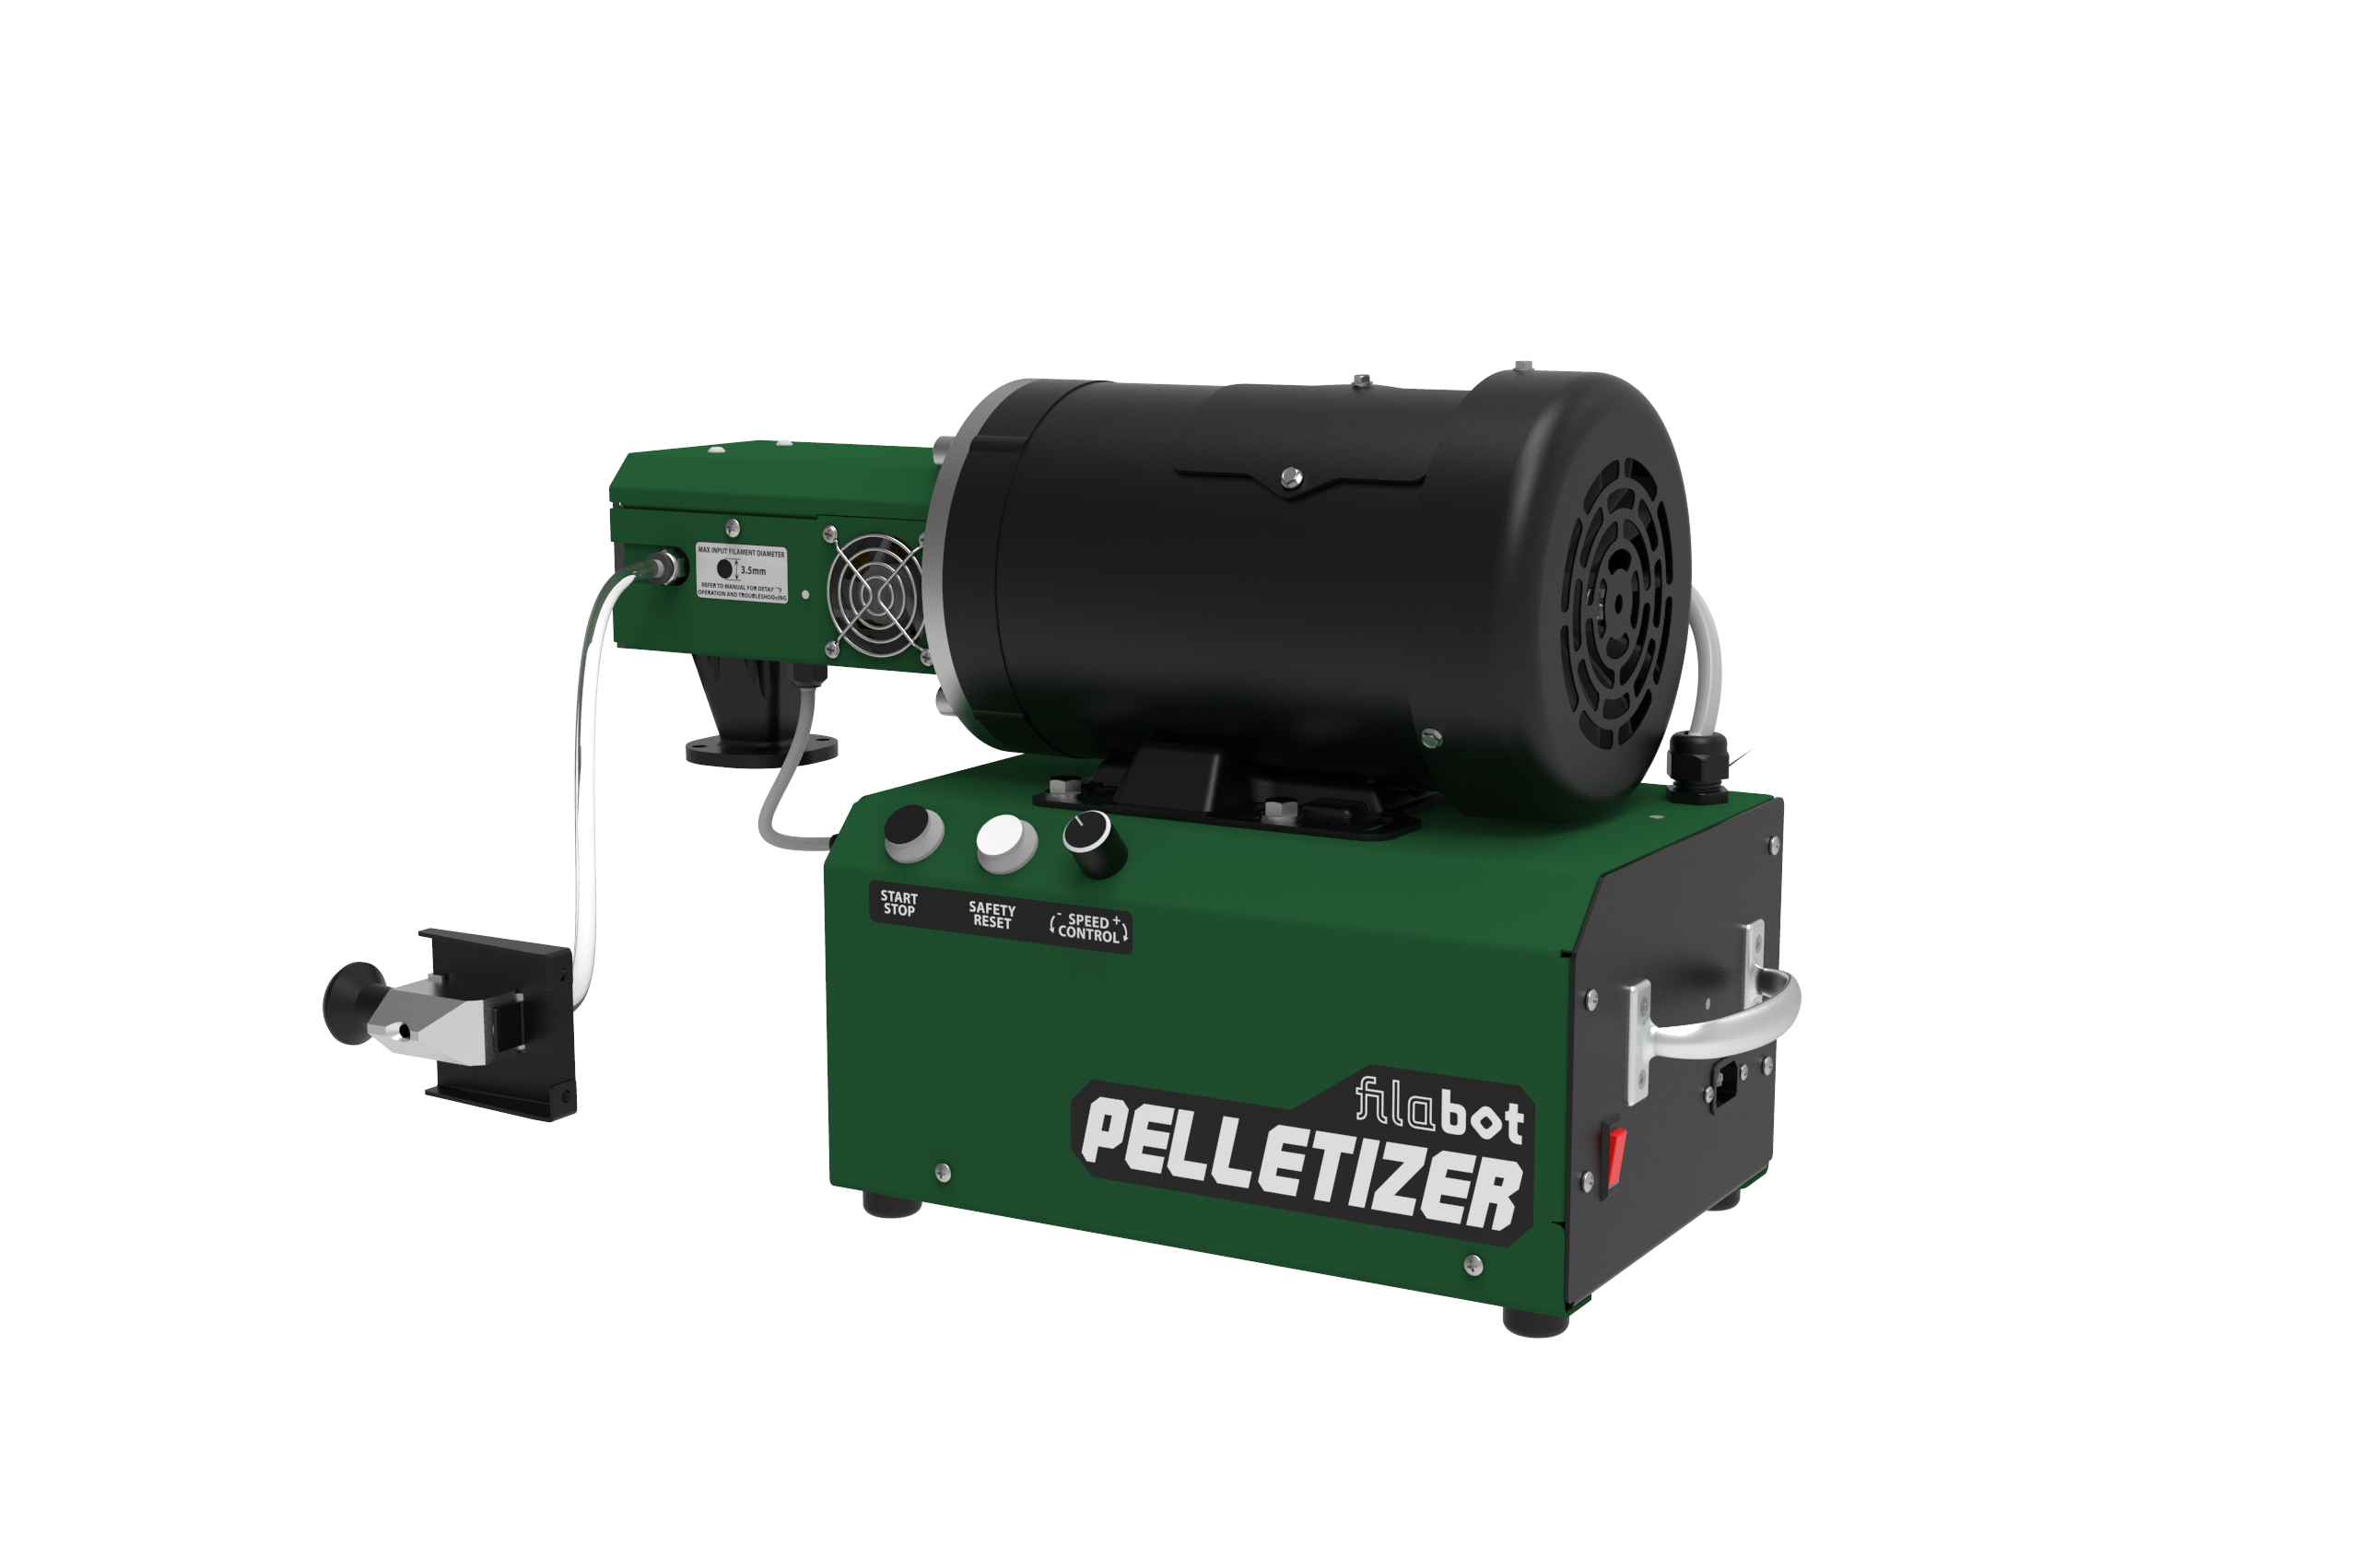 Filabot Pelletizer - High Speed Filament Cutting